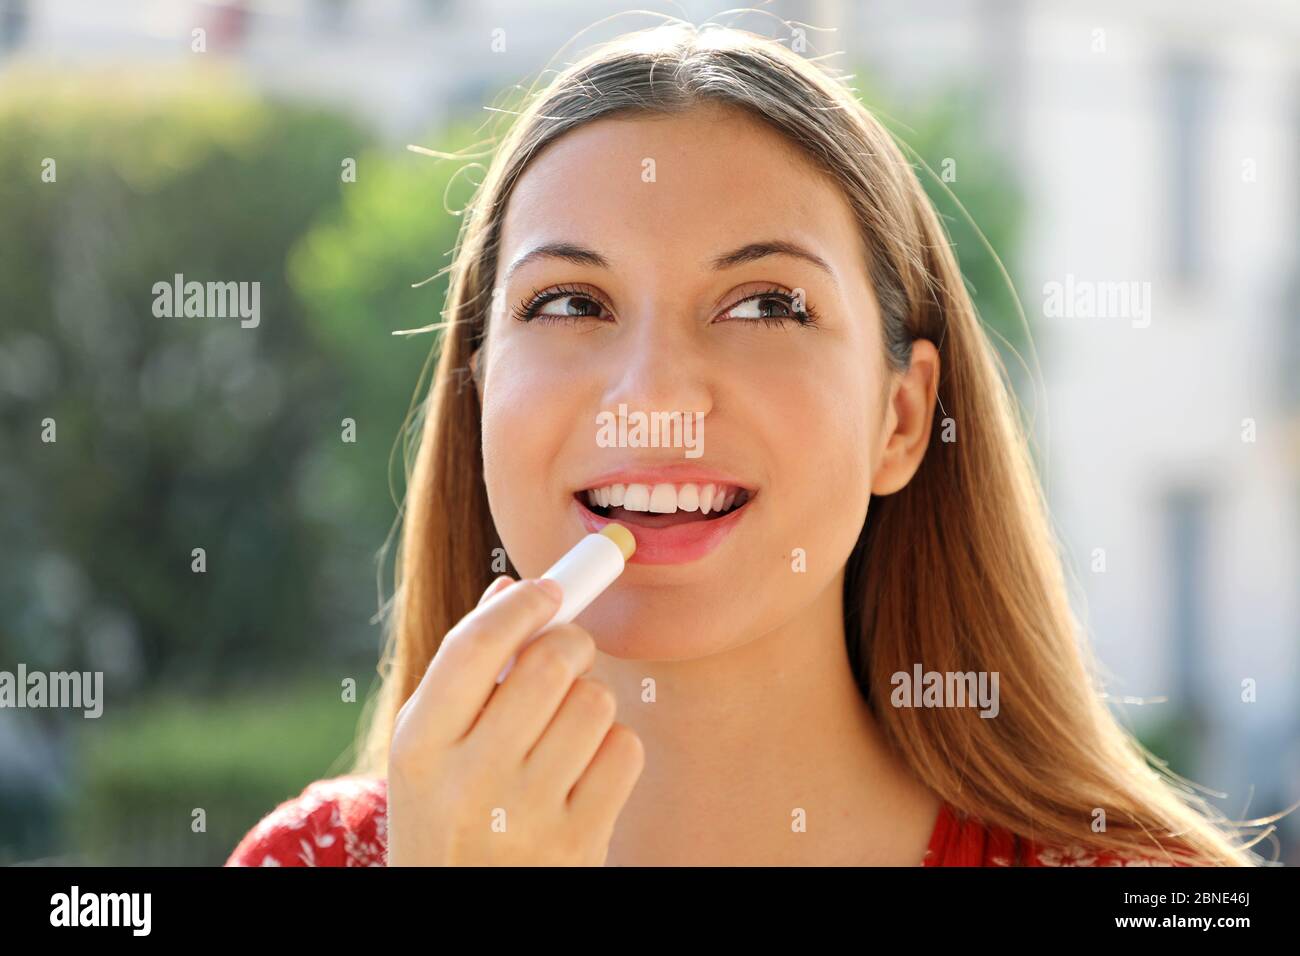 Porträt einer glücklichen jungen Frau Lippenbalsam im Sommer im Freien Stockfoto